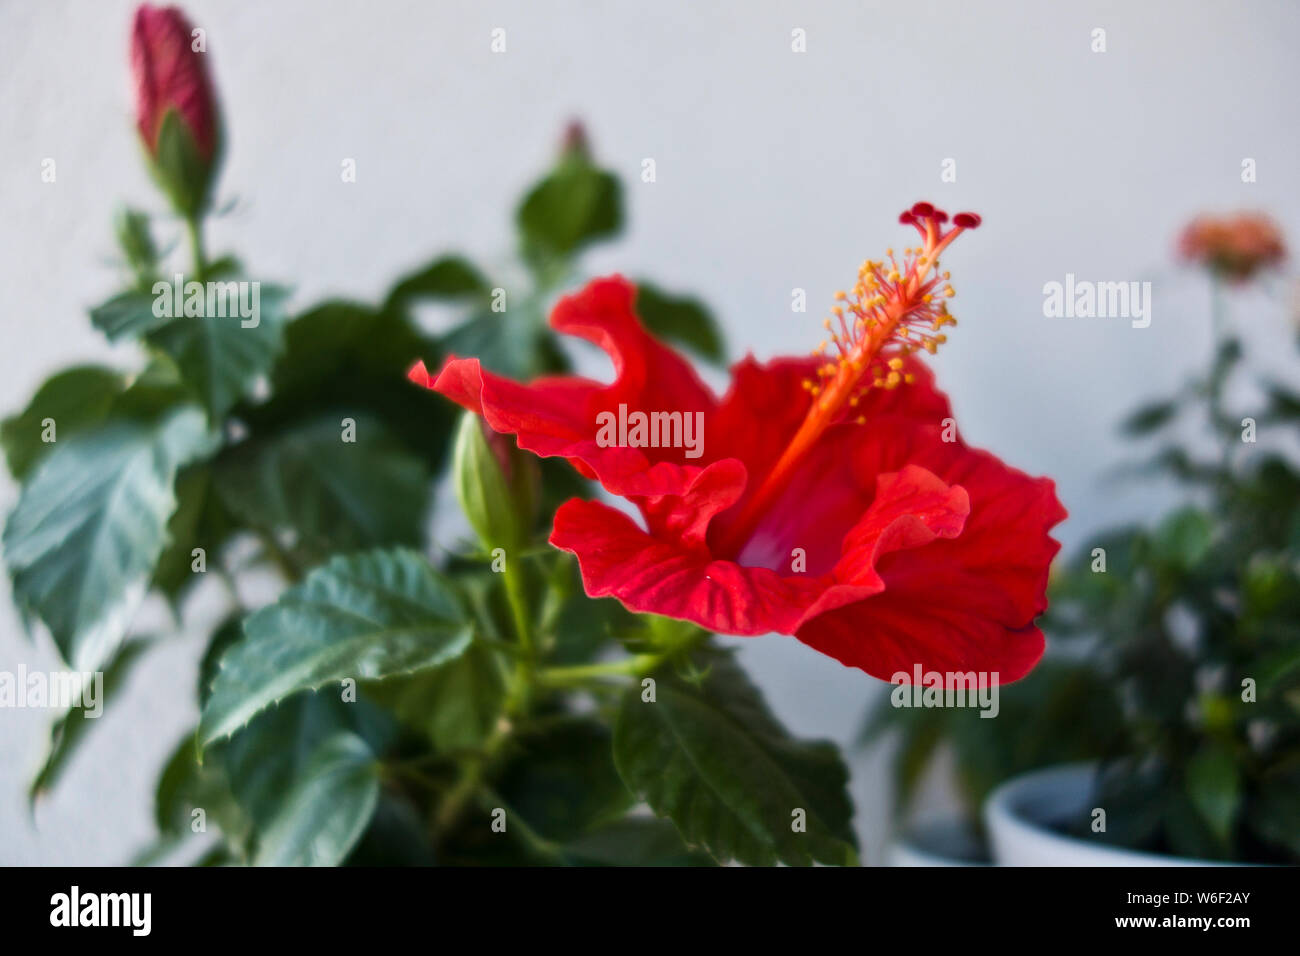 Rose Malven oder Hibiscus blühende Pflanze in einer Vase, rote Blume vollständig geöffnet Stockfoto